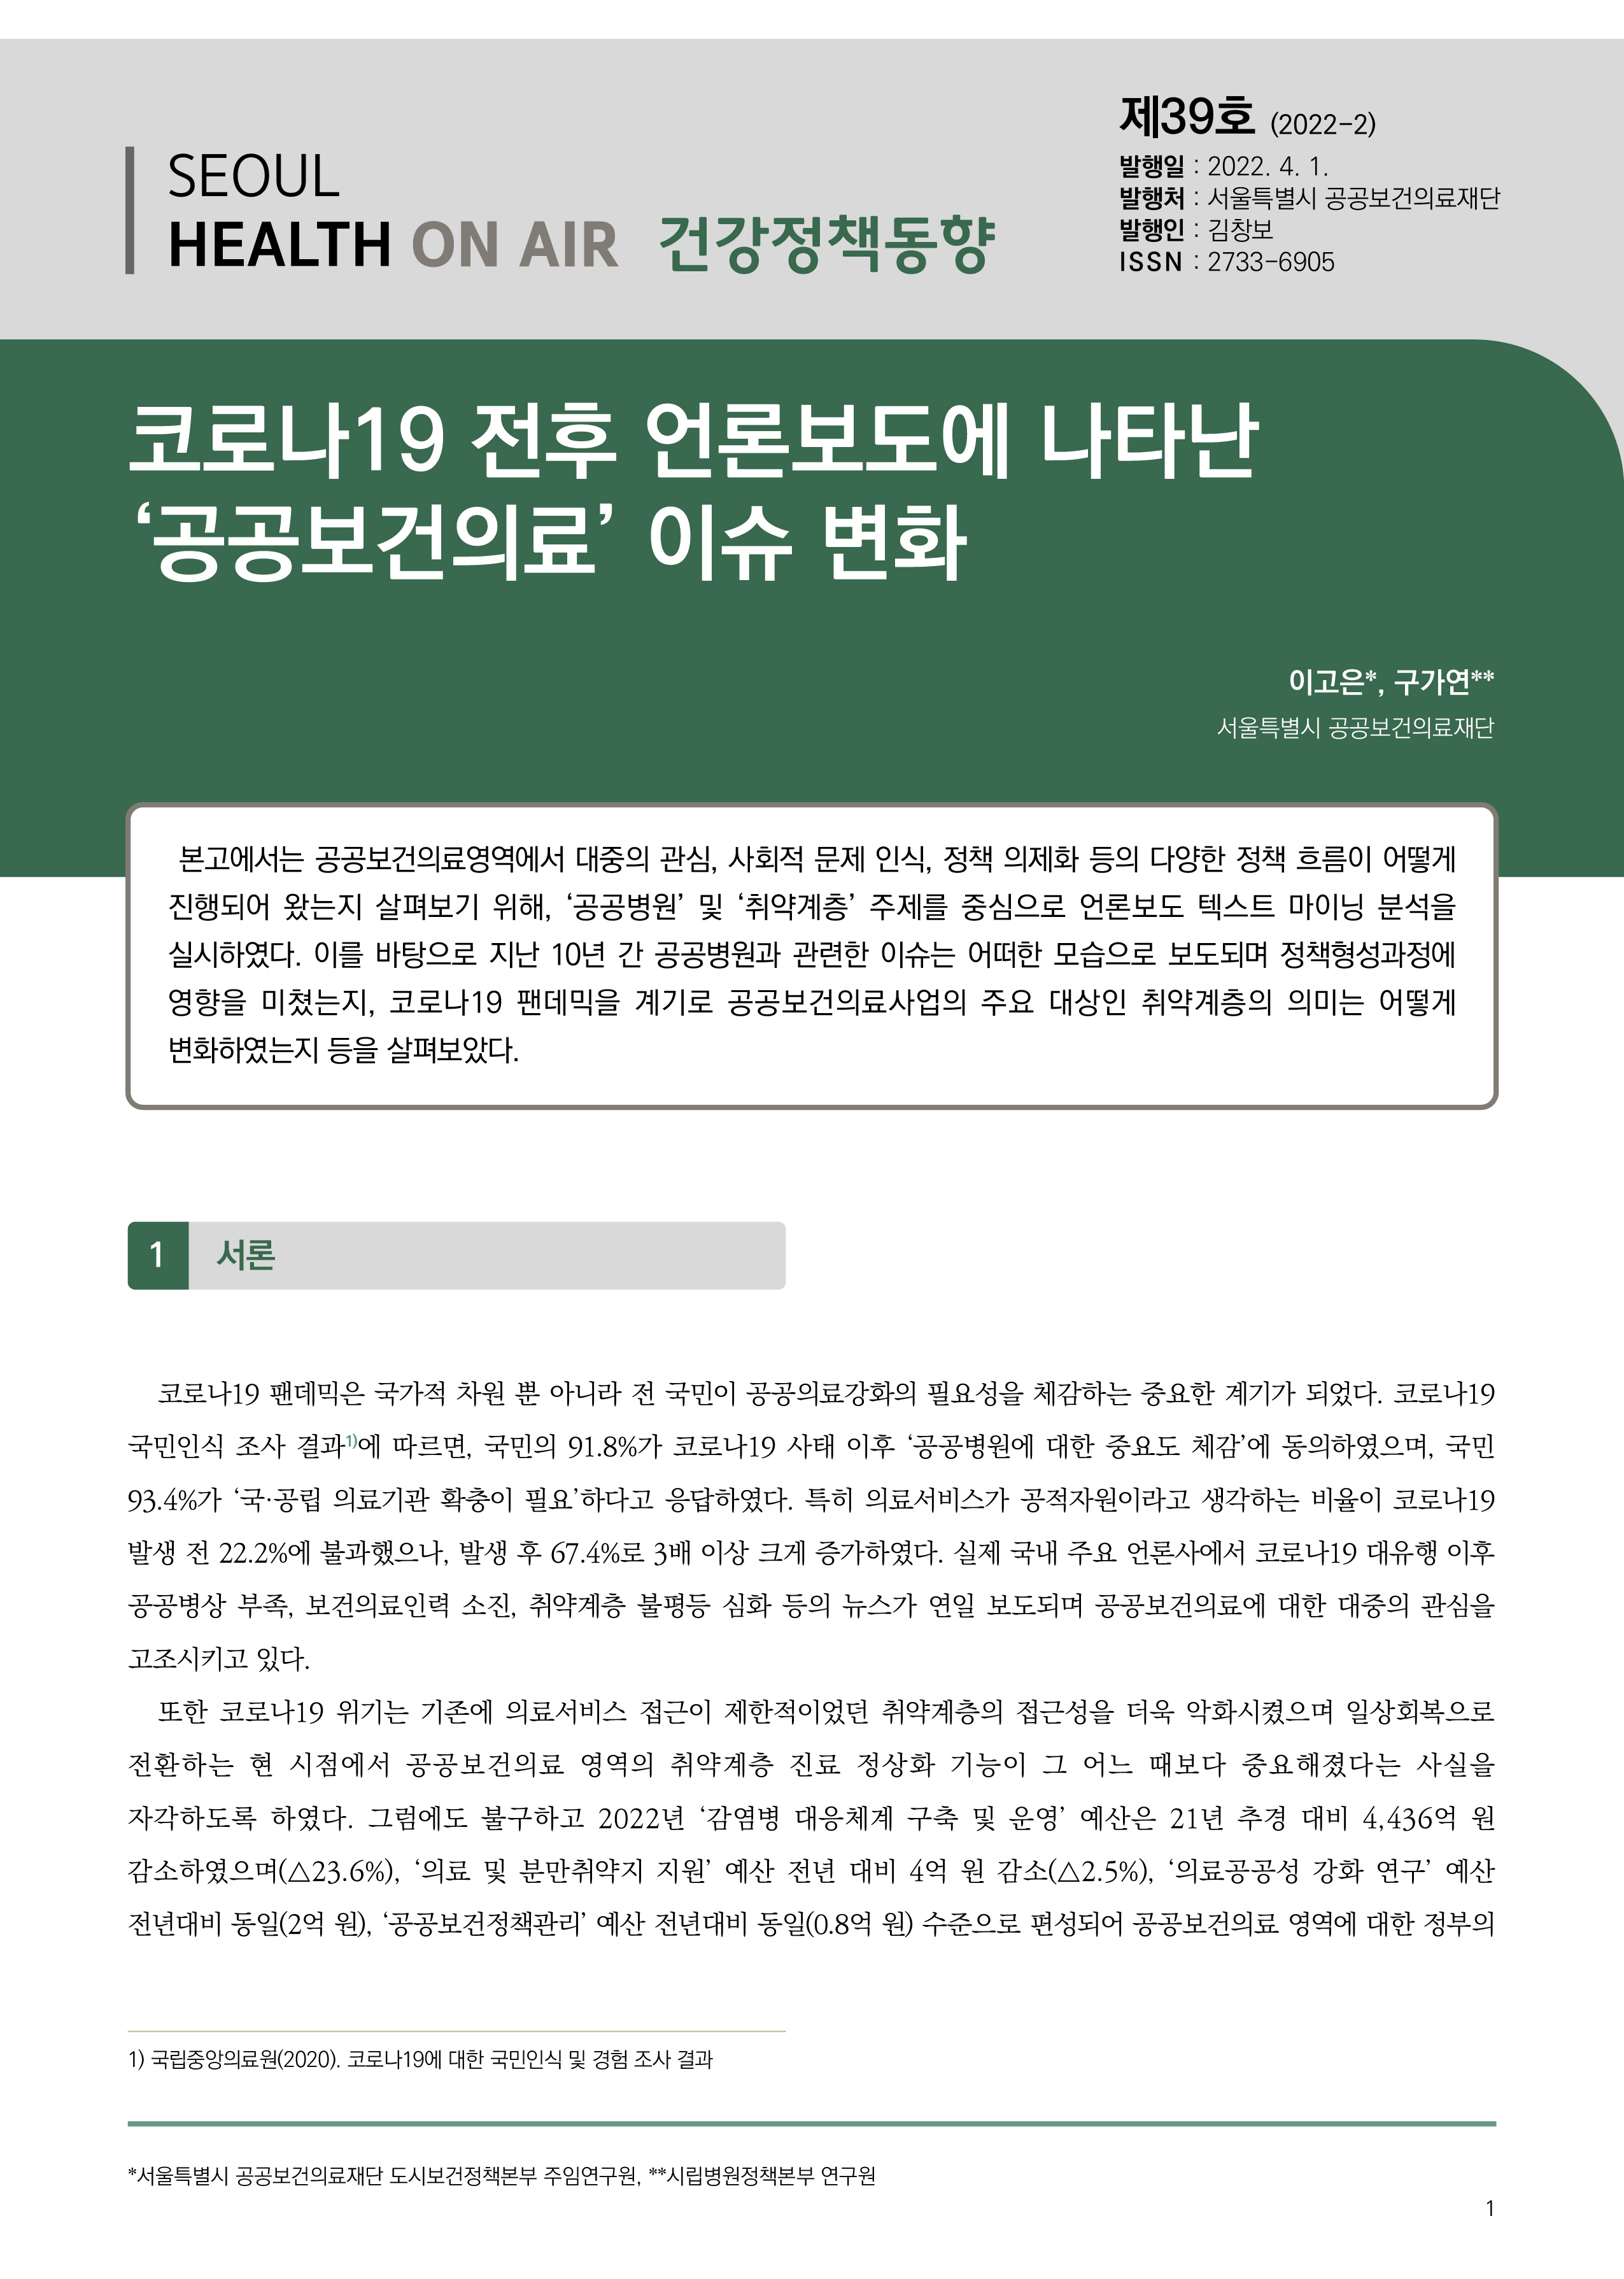 코로나19 전후 언론보도에 나타난 '공공보건의료' 이슈 변화 (건강정책동향 Vol.39) Seoul Health On-Air